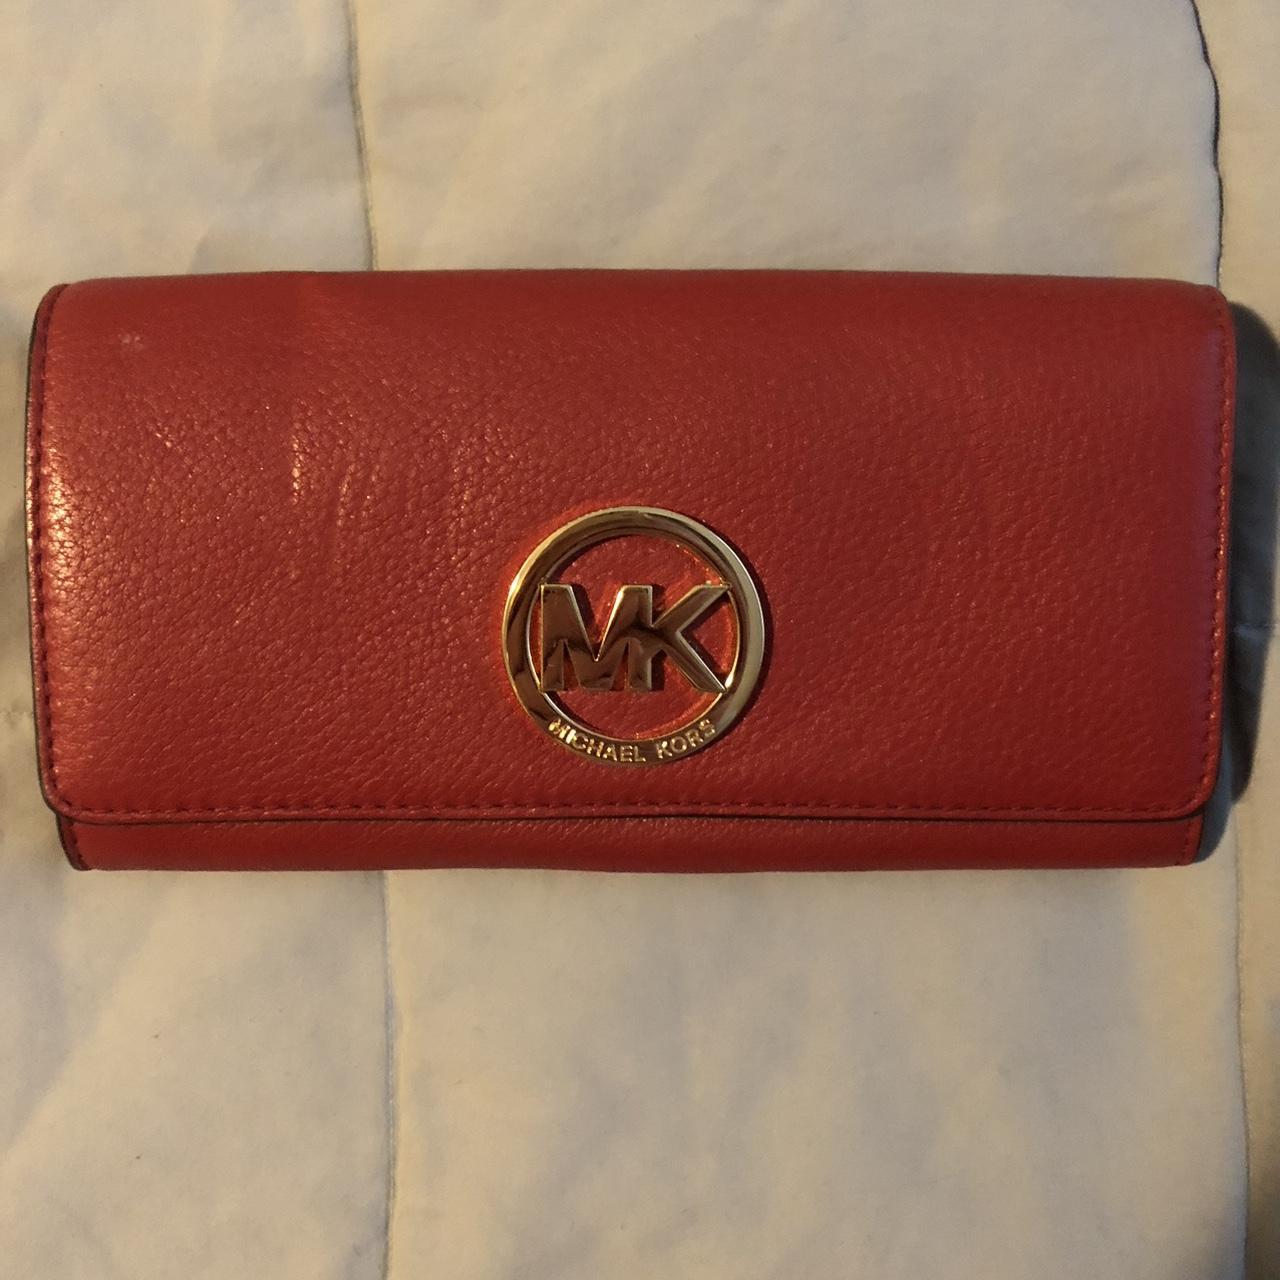 Michael Kors Women's Wallet